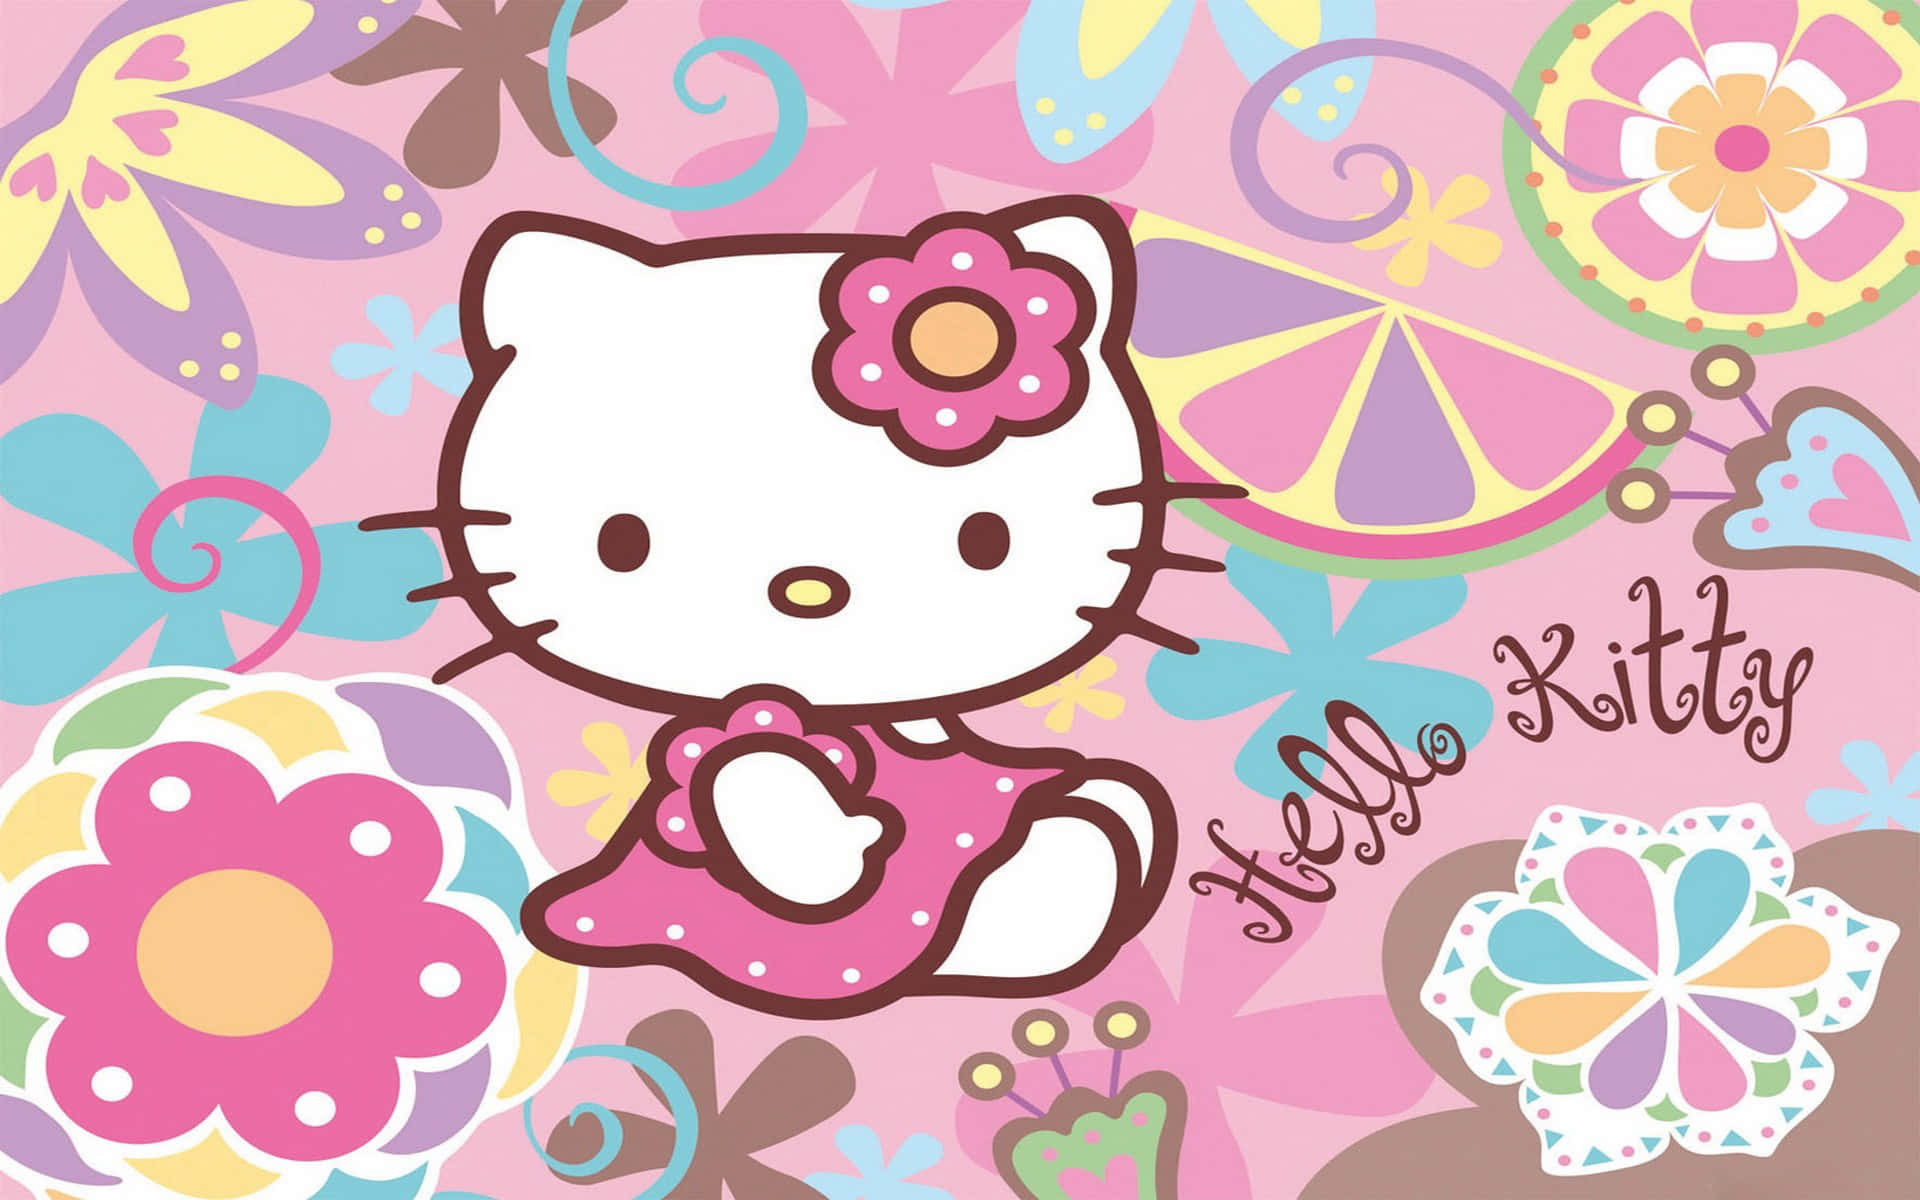 Scaricail Wallpaper Per Pc Di Hello Kitty Da Wallpapers.com Per Tutti I Tuoi Dispositivi. Sfondo